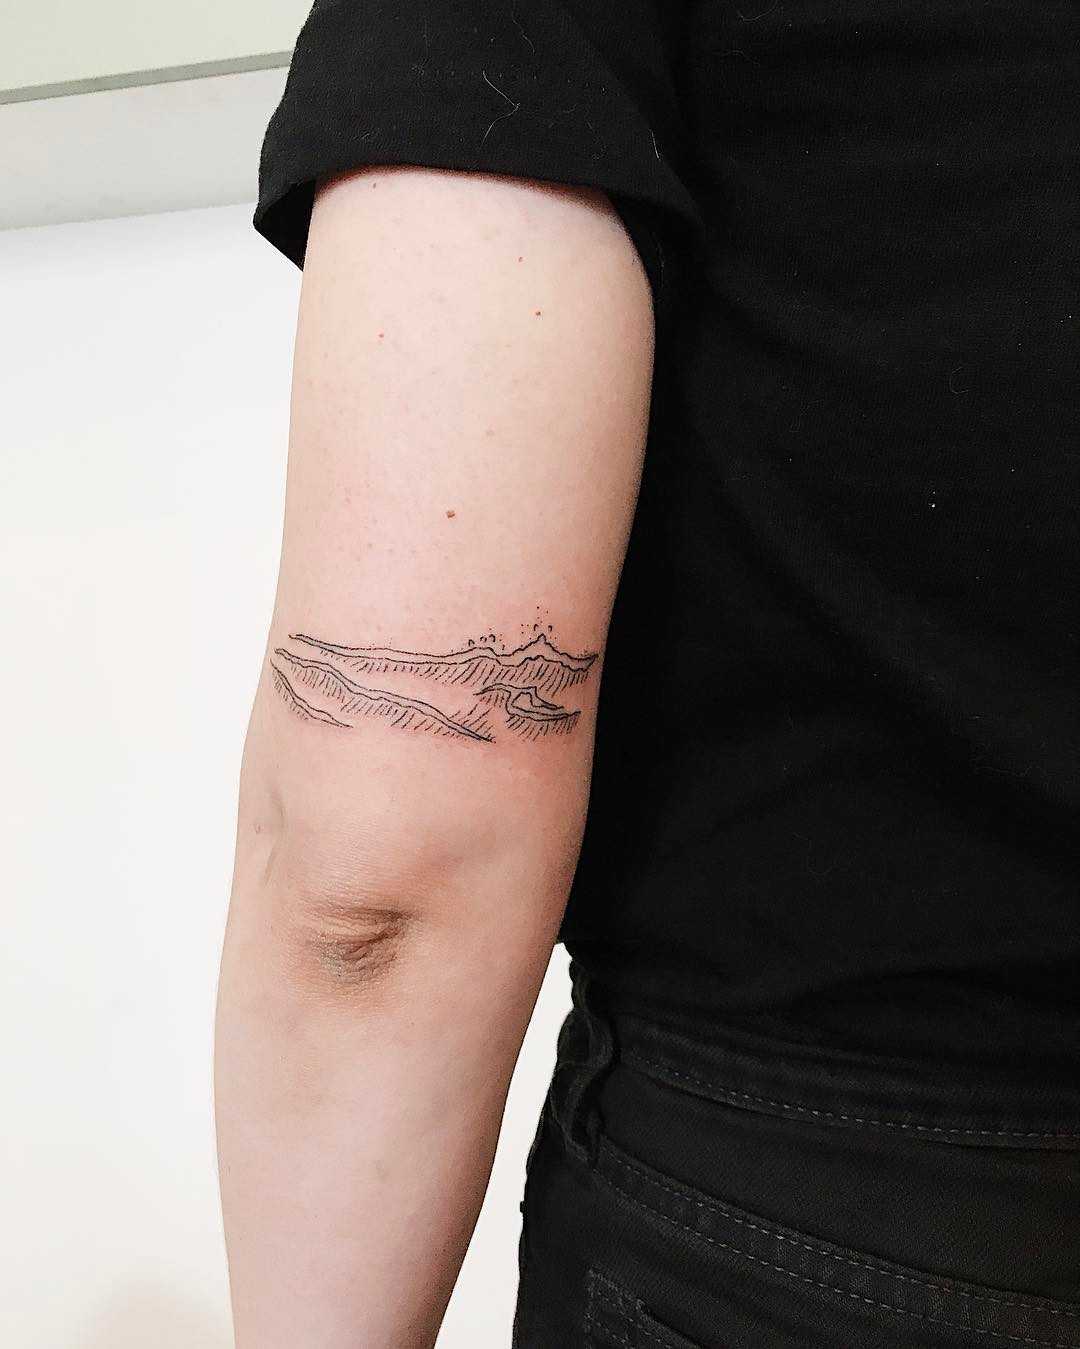 Seawave tattoo, sea tattoo, wave tattoo, Small tattoo, Colorful tattoo,  Latest tattoo, Wrist tattoo, Tattoo design,… | Abstract tattoo, Latest  tattoos, Water tattoo